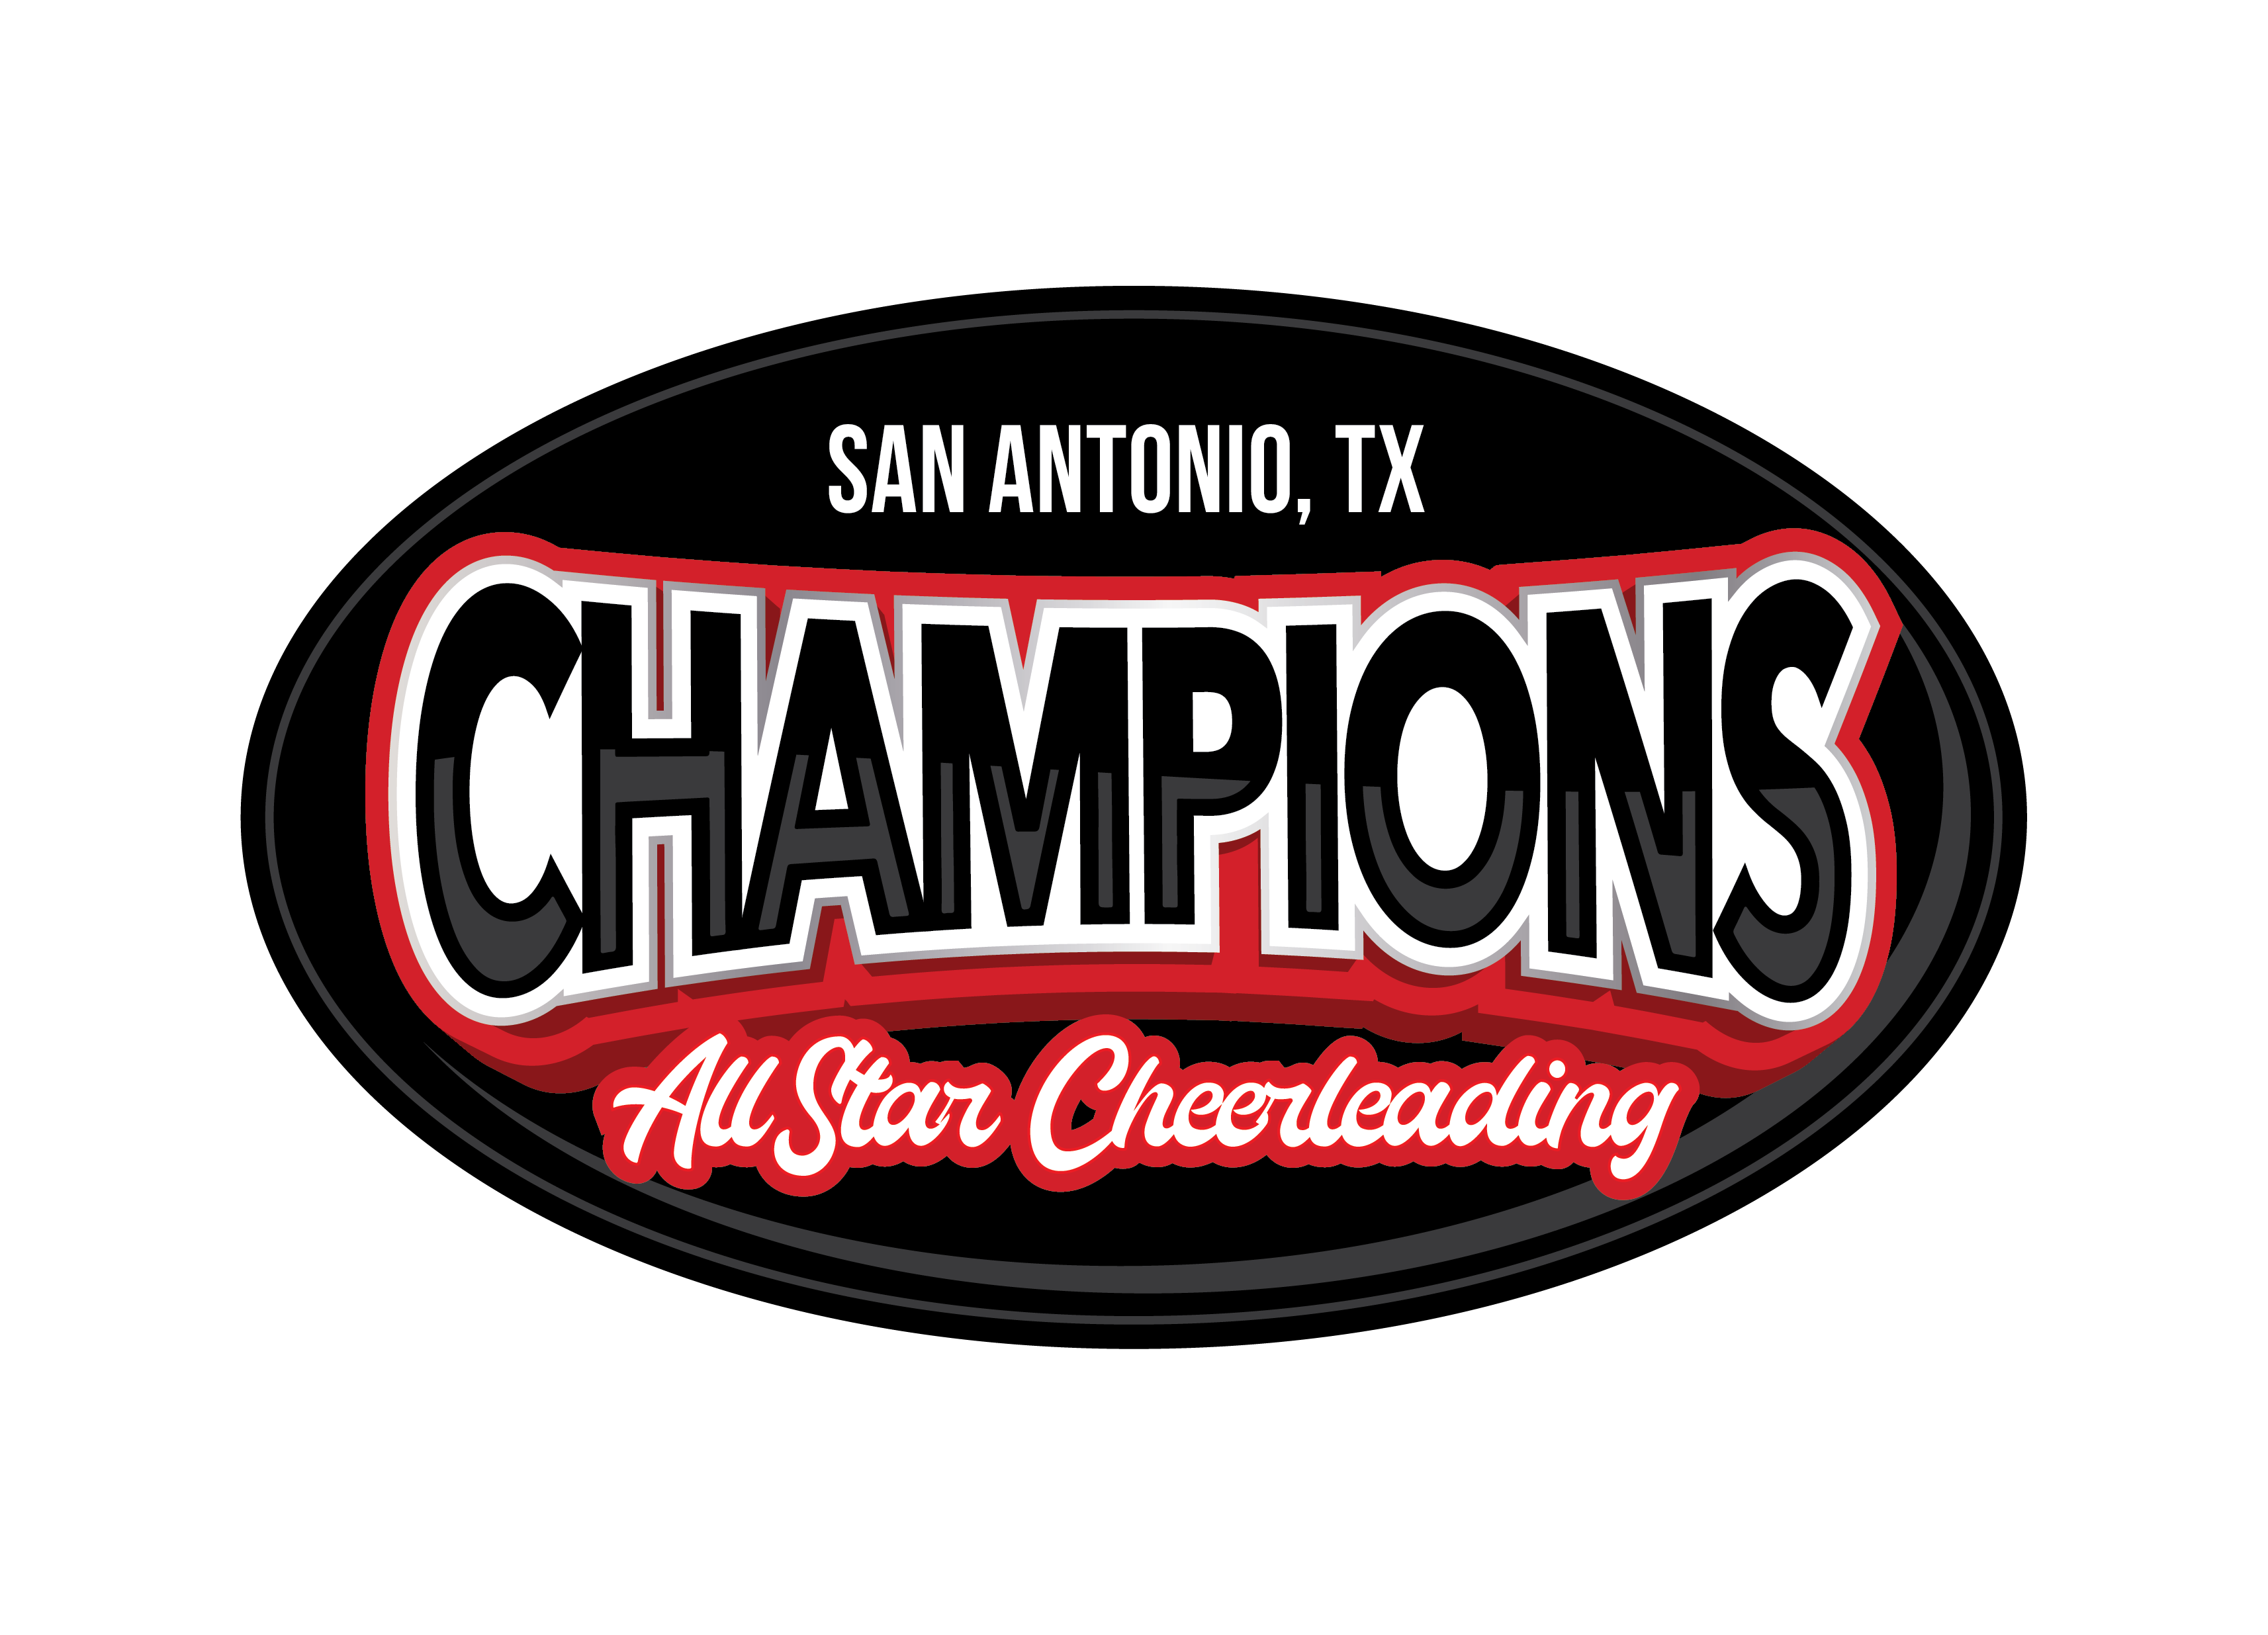 CChampions Allstar Cheerleading Logo